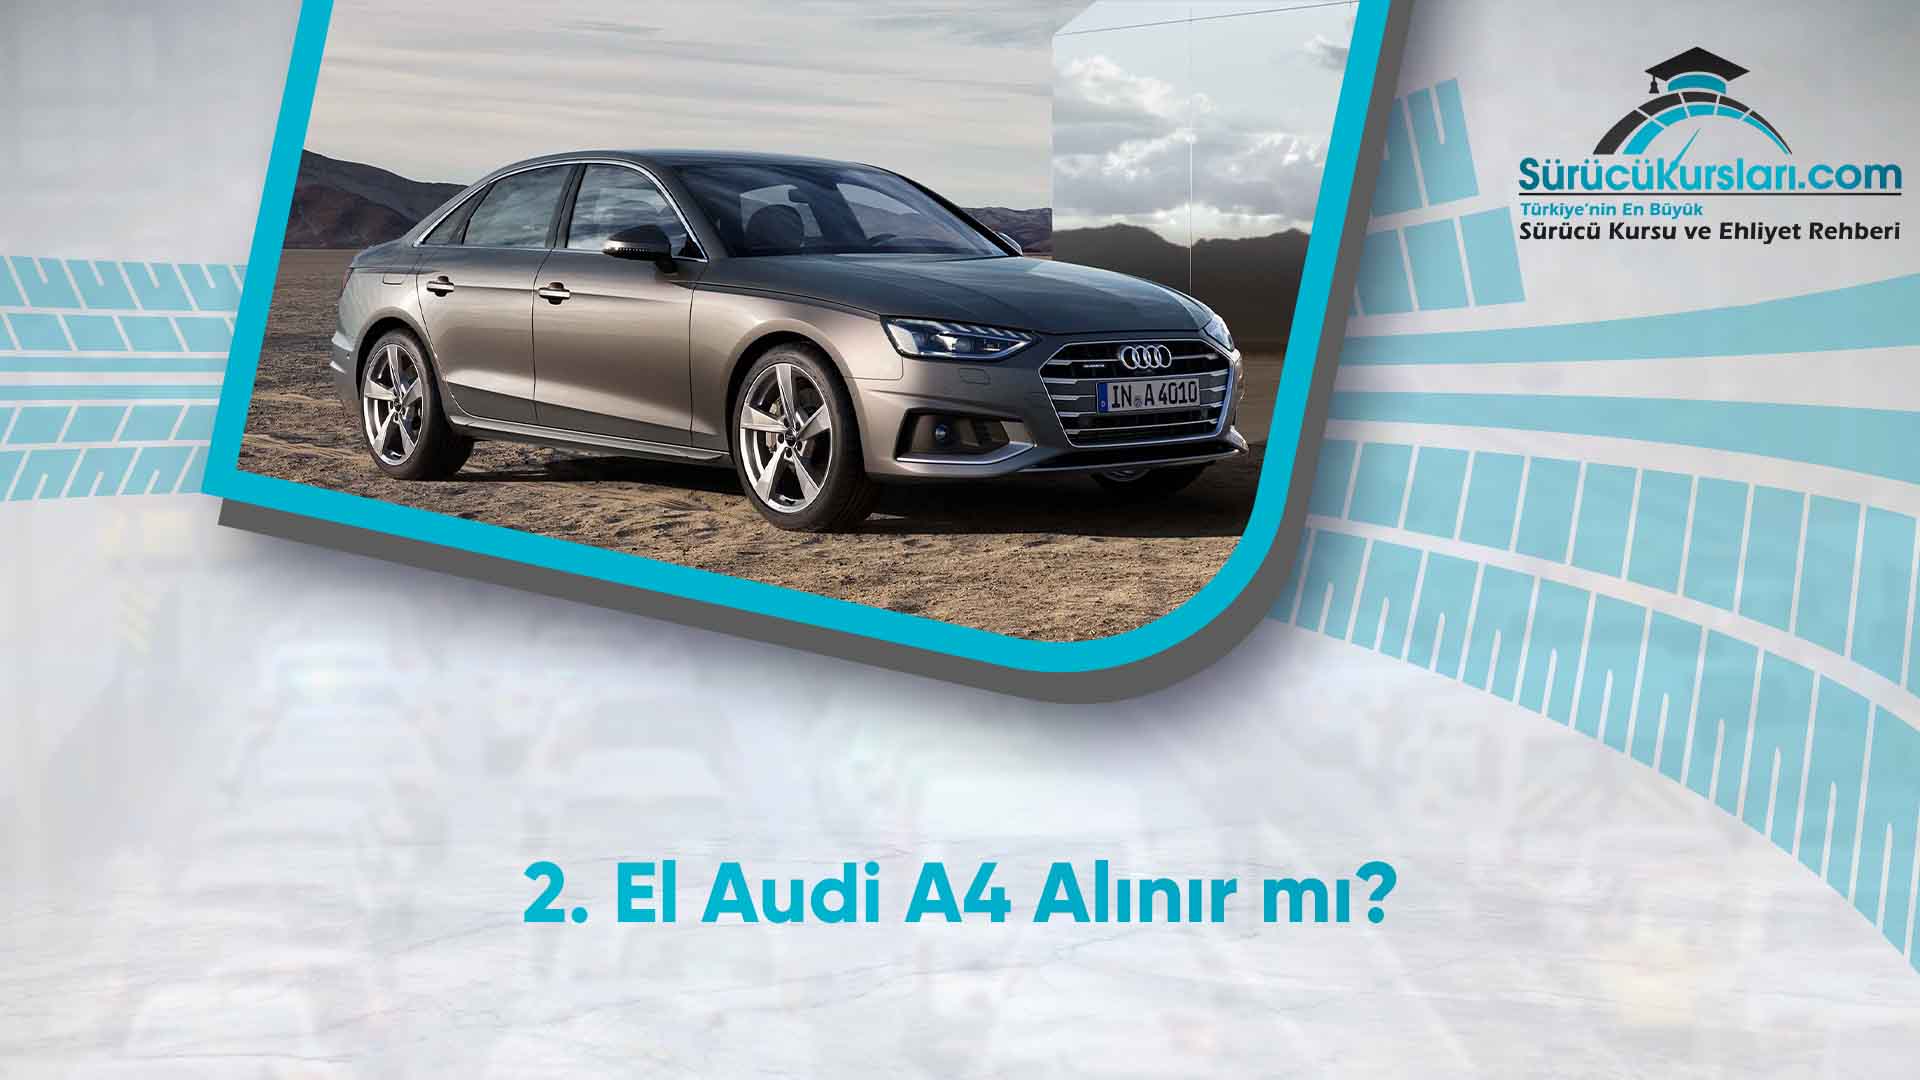 2. El Audi A4 Alınır mı